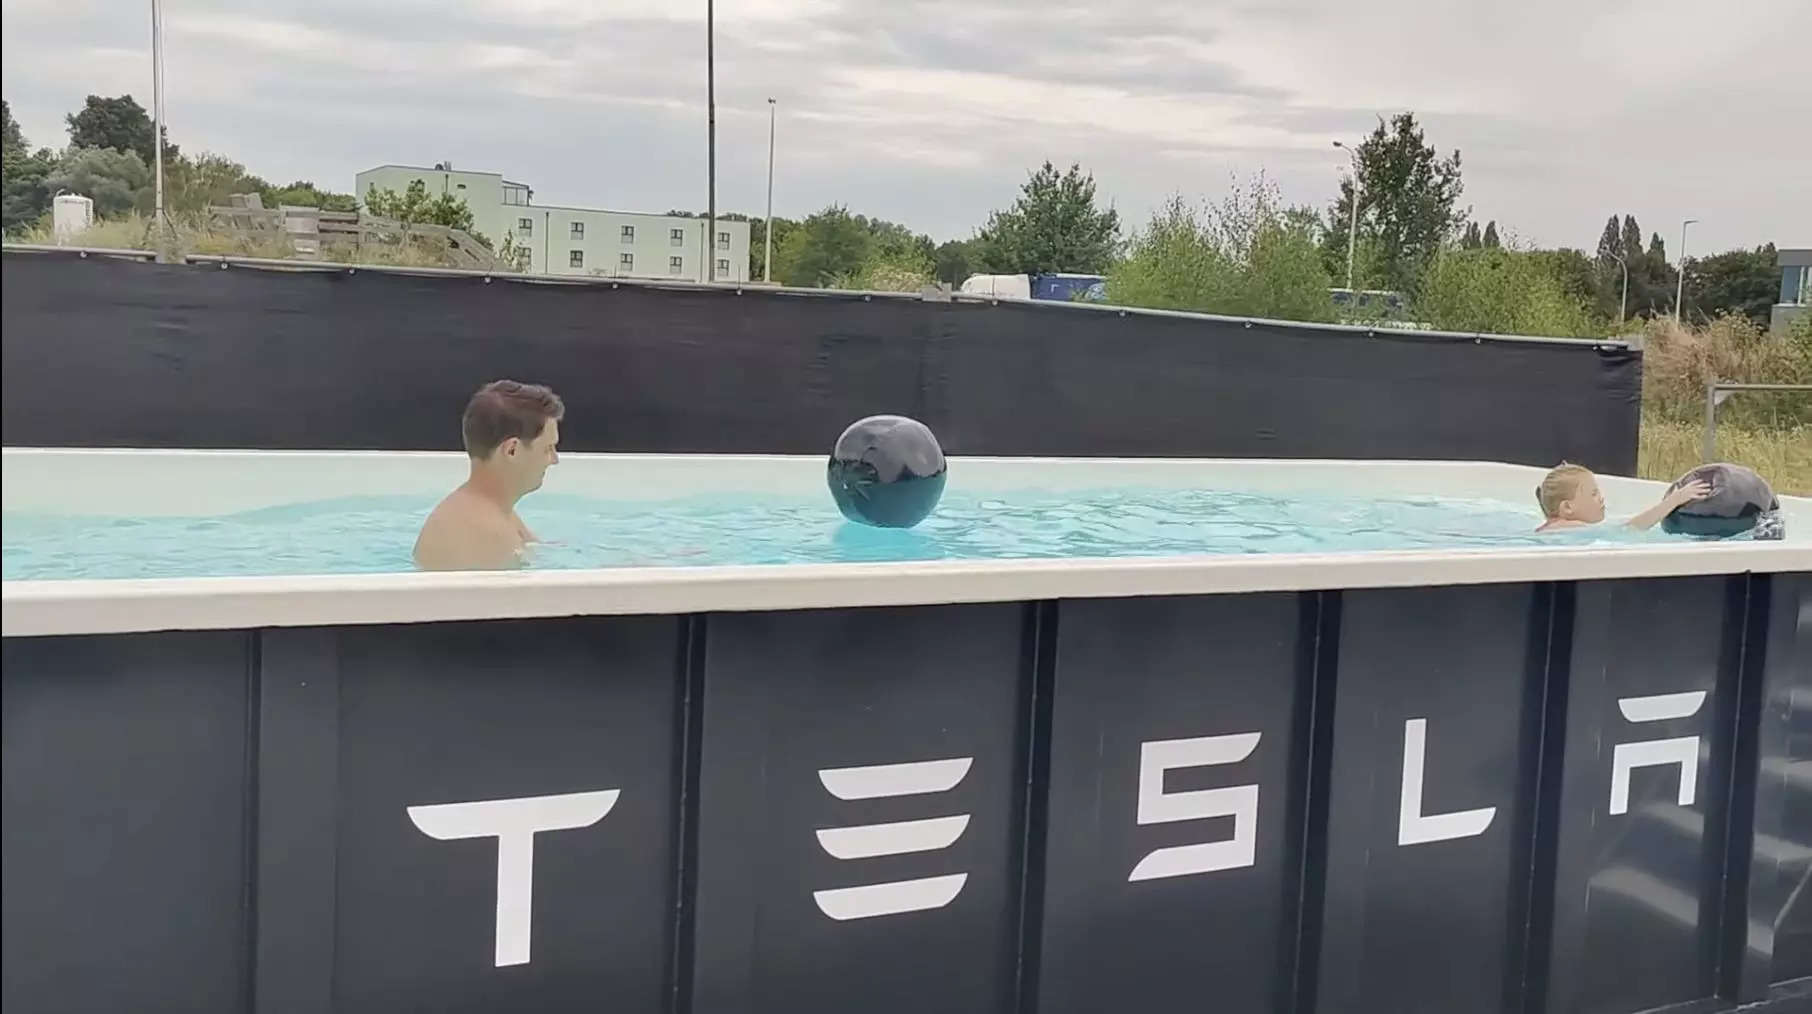 An einer Ladestation in Deutschland wurde gerade ein solarbetriebenes Tesla-Schwimmbad eröffnet, damit sich die Fahrer entspannen können, während ihre Autos aufgeladen werden